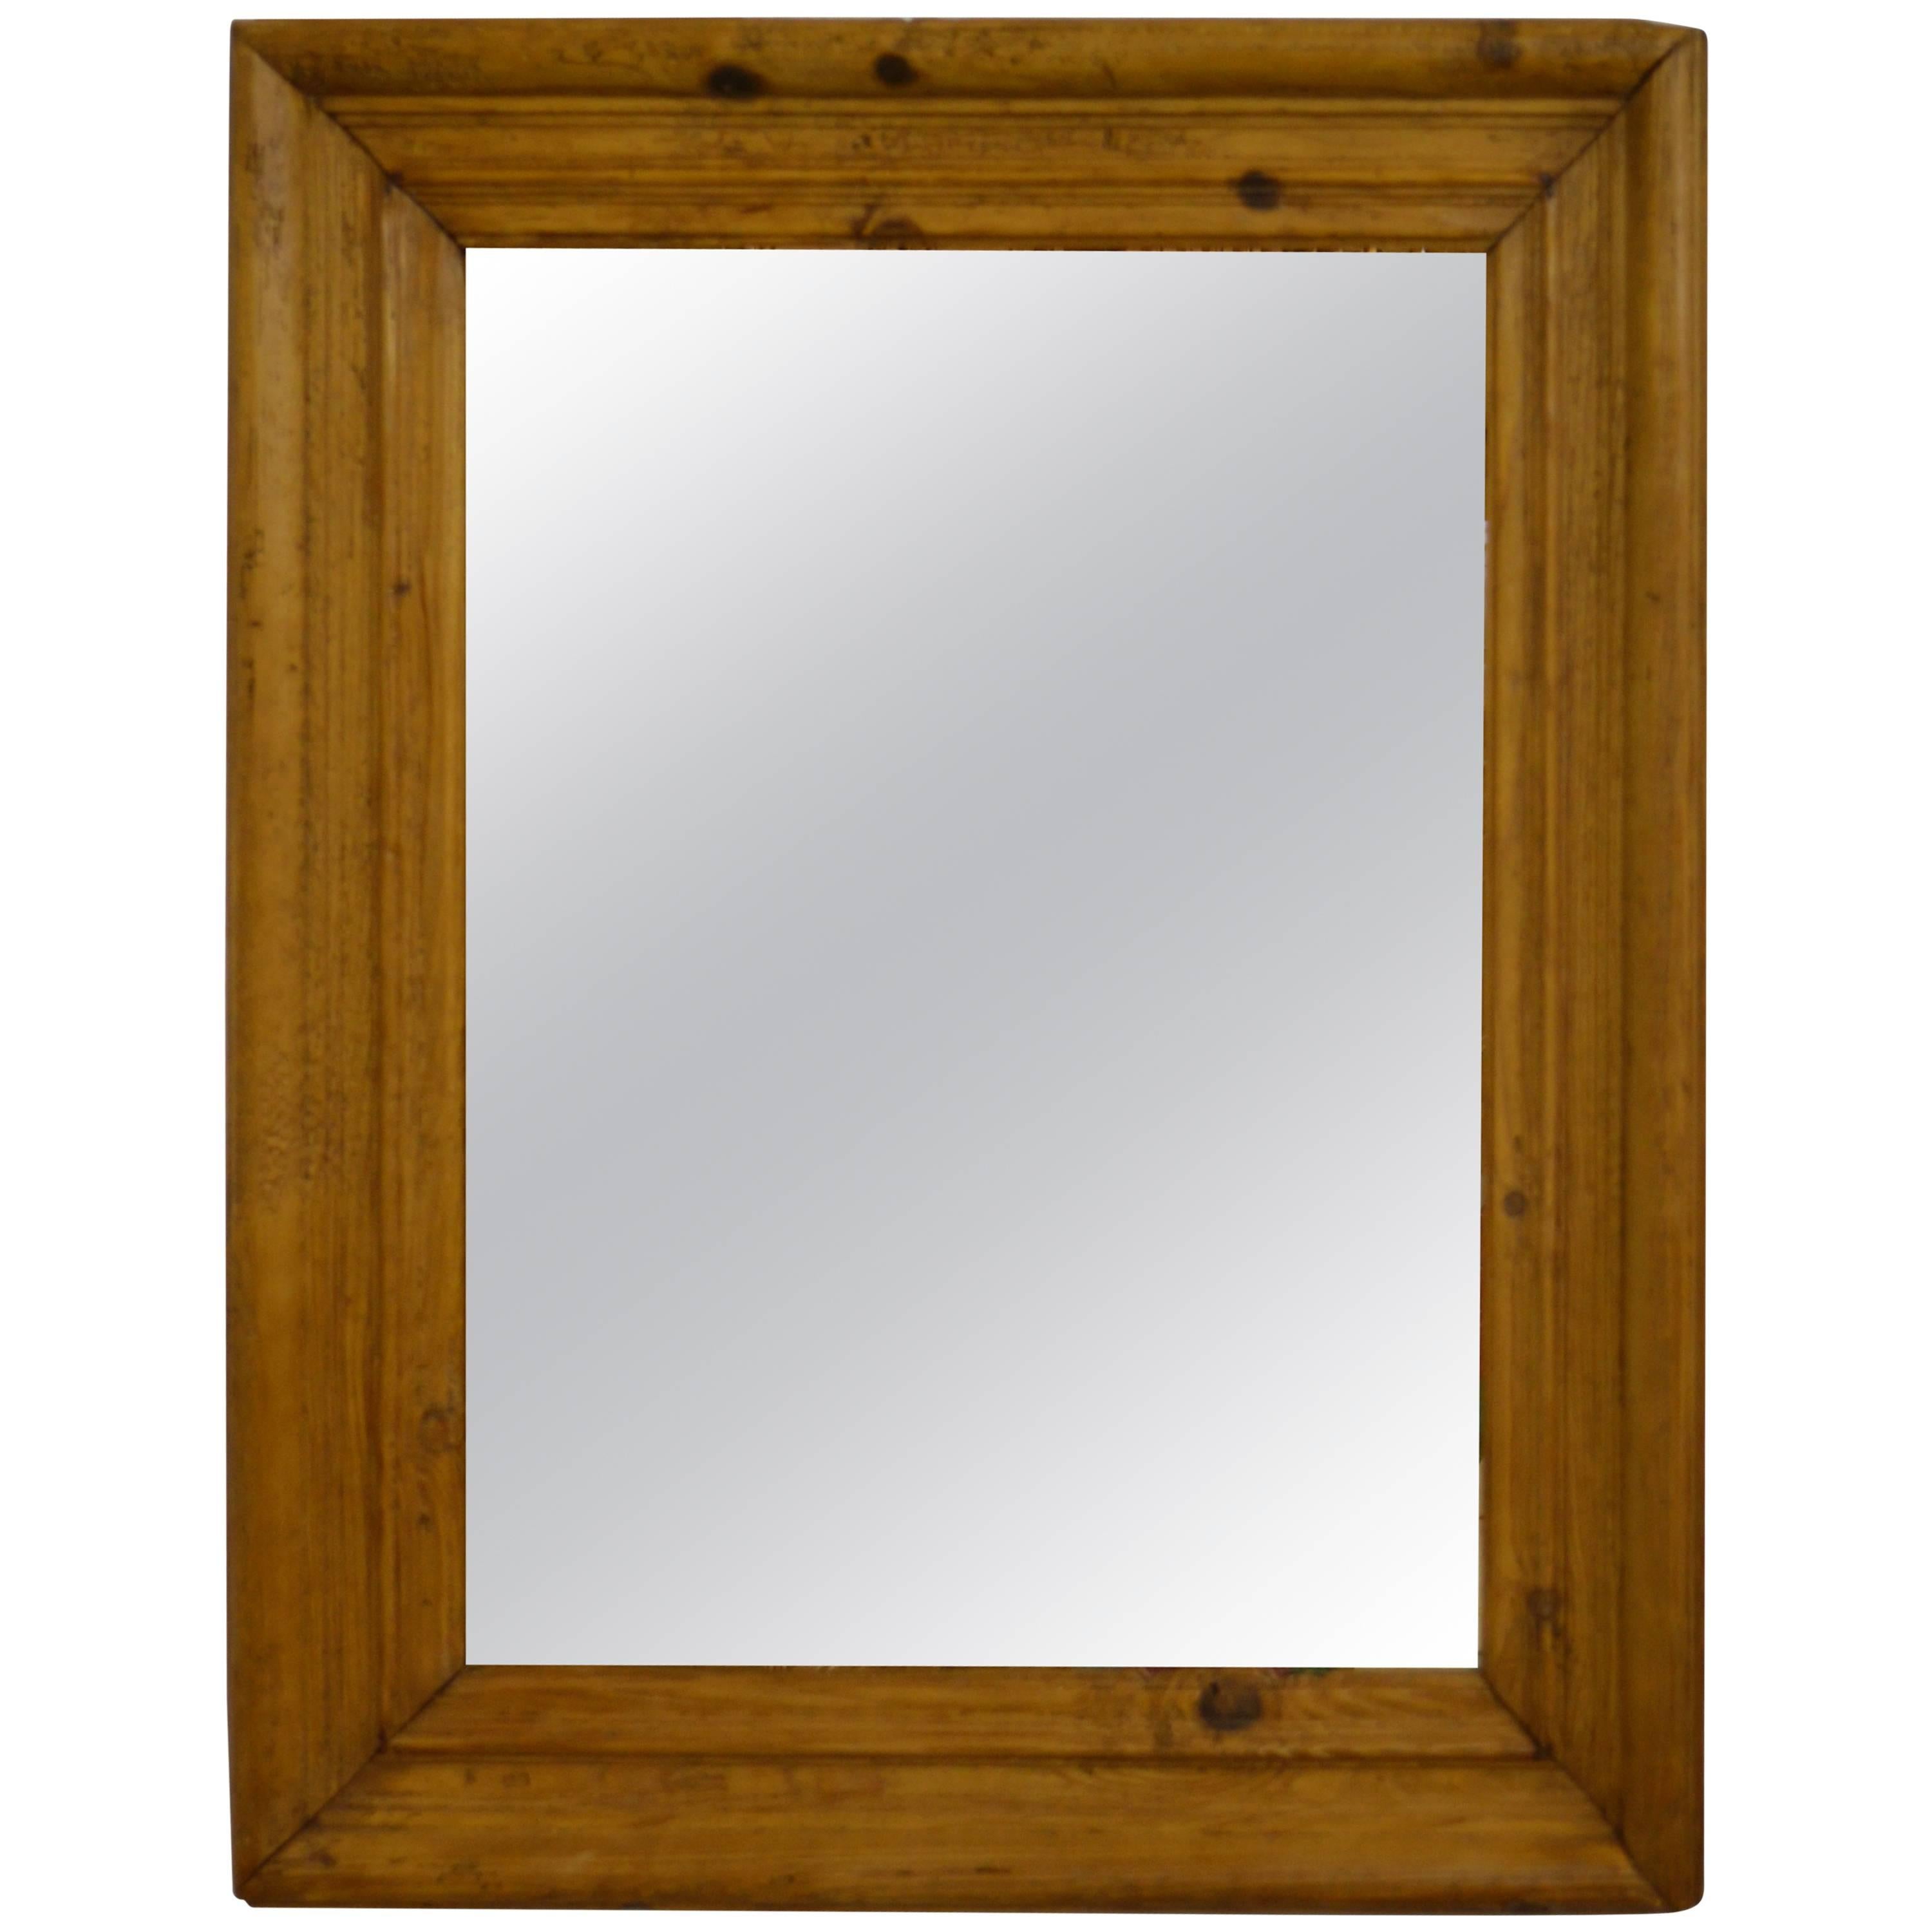 Antique Pine Mirror Frame